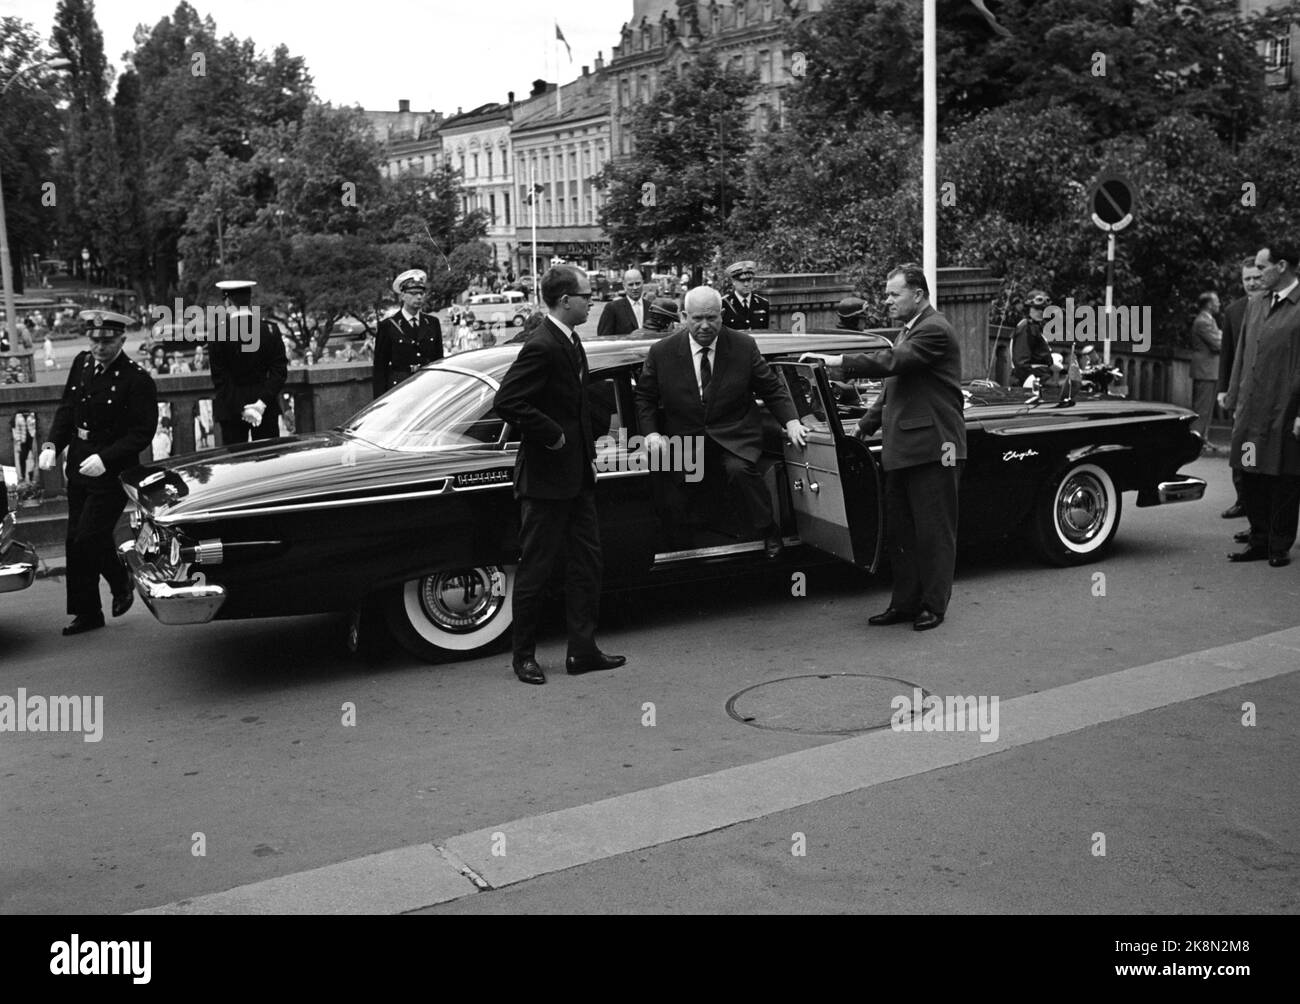 Oslo 1964. Leader sovietico Nikita Khrushchev in visita ufficiale in Norvegia. Qui arriva allo Storting. L'auto americana è un Belvedere di Plymouth, prodotto da Chrysler Corporation Foto: Corrente / NTB Foto Stock